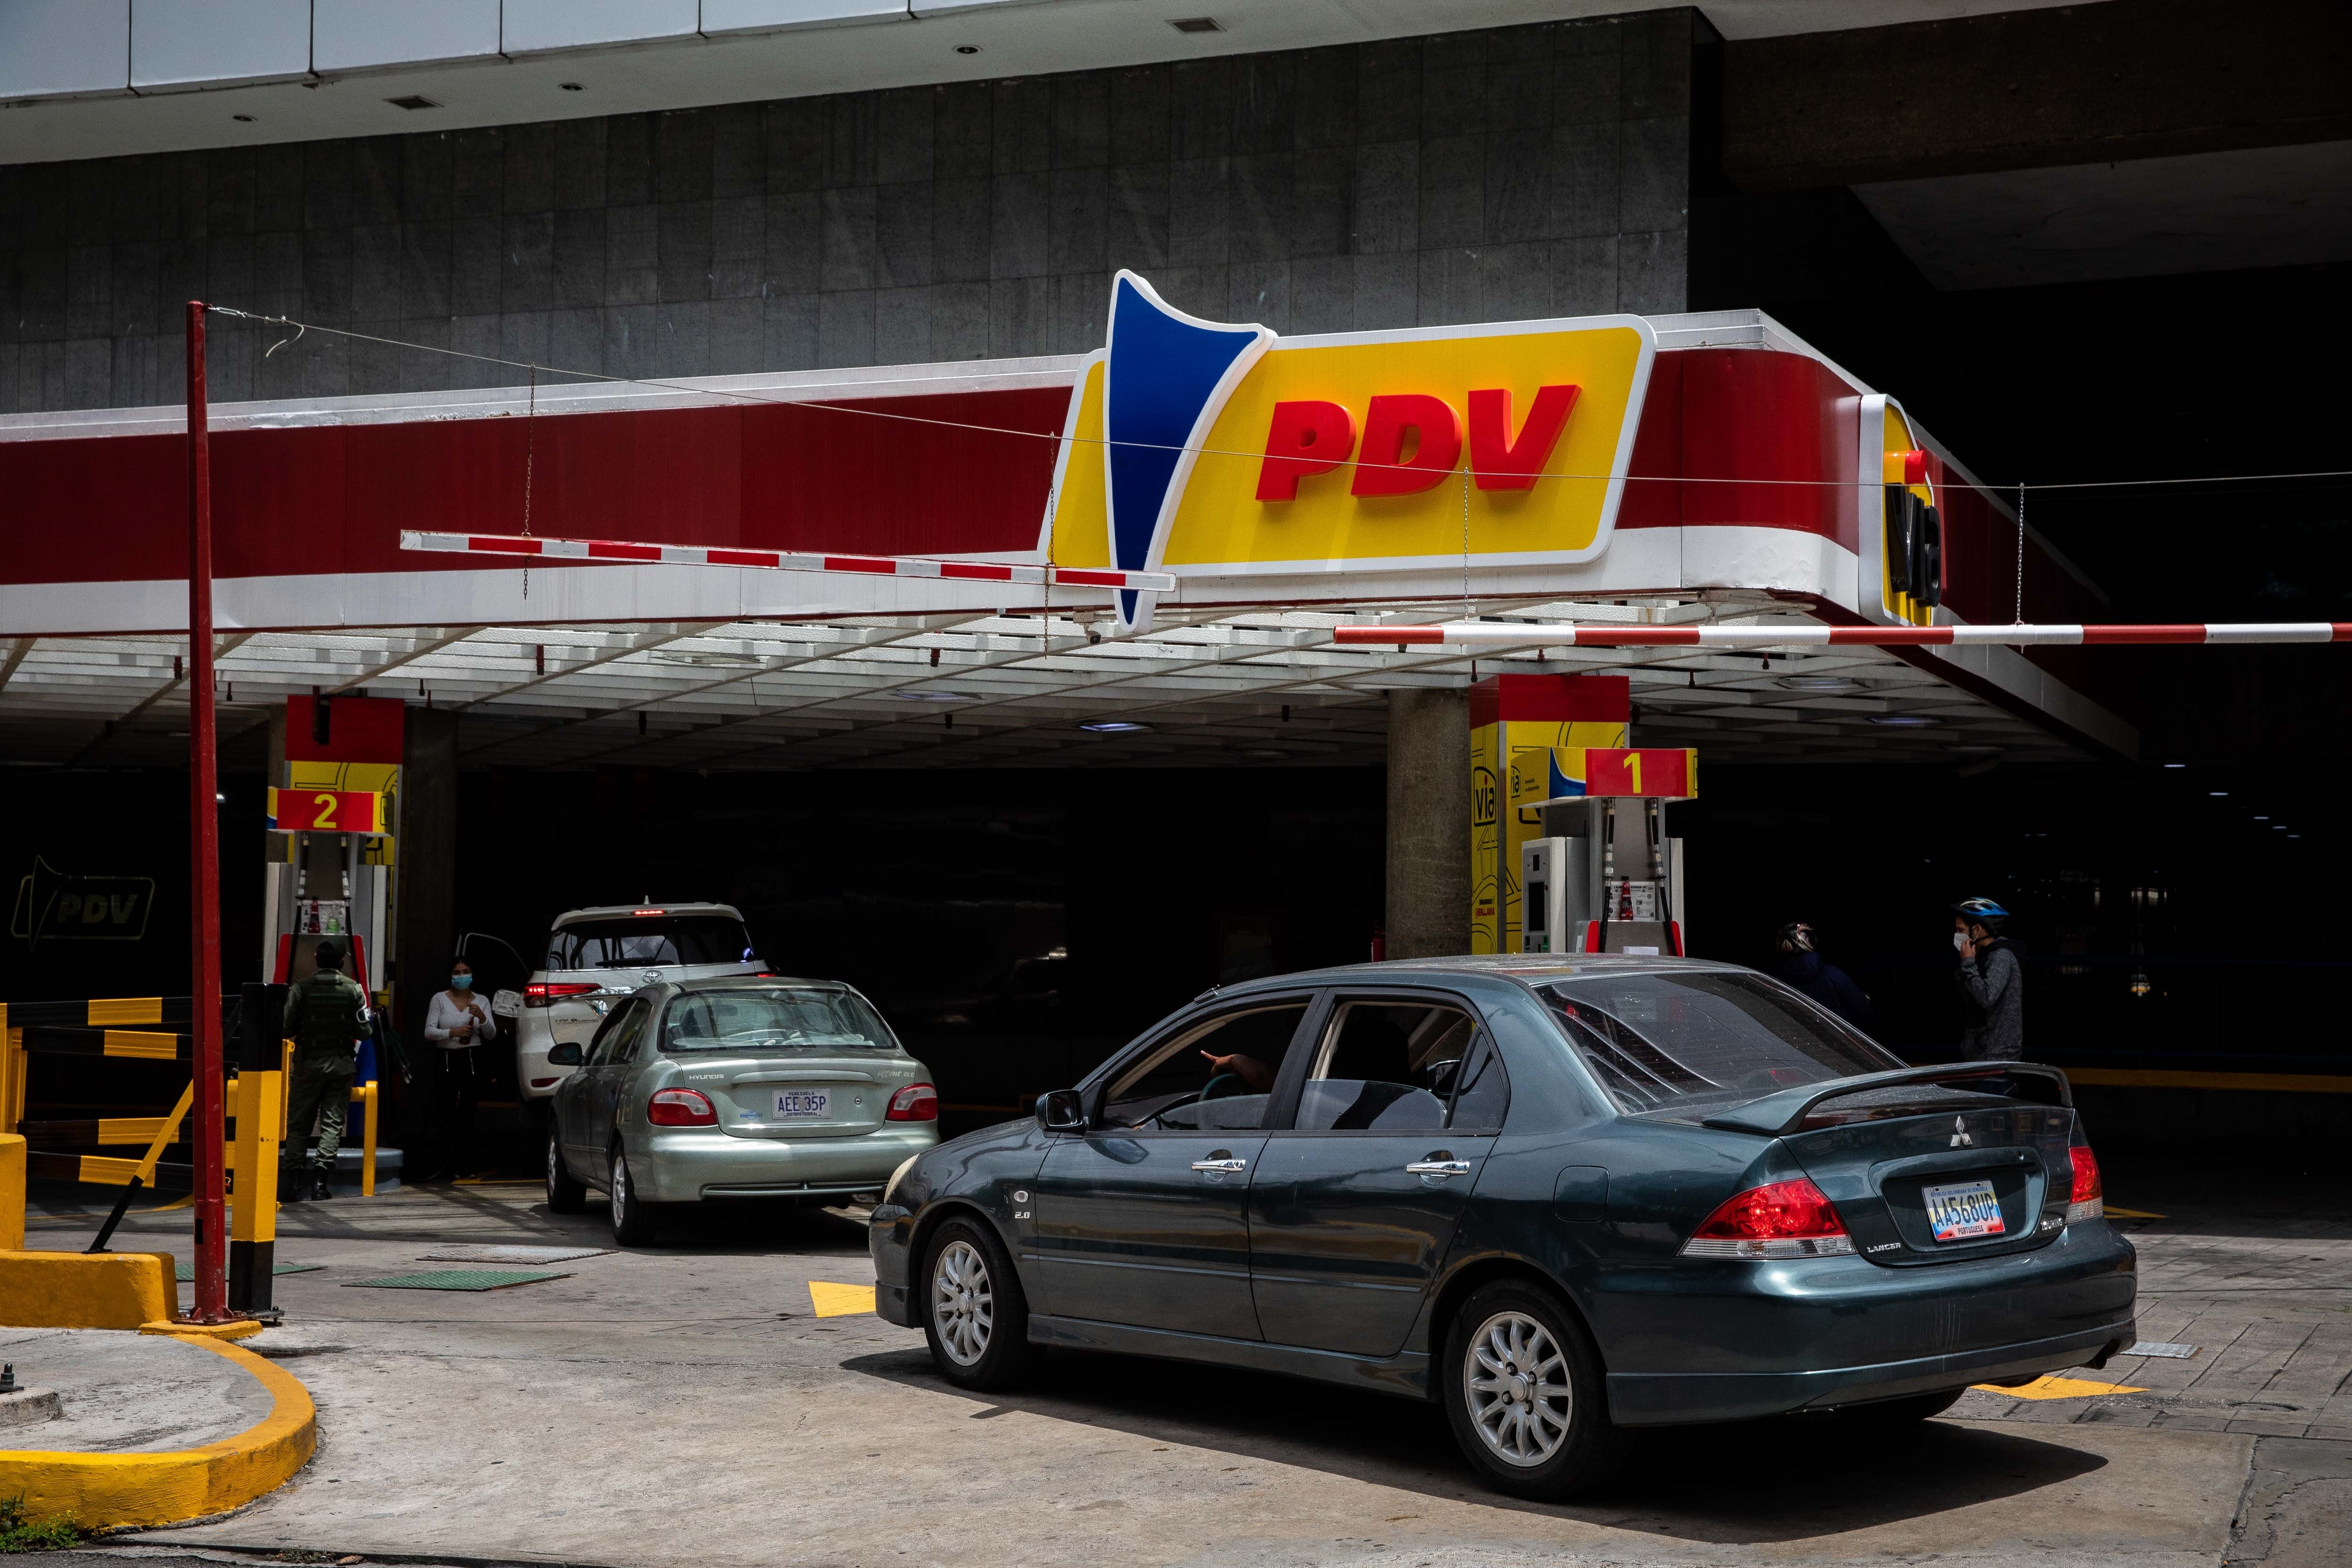 El insólito “Bingo” que determina qué matrículas de auto pueden surtirse de gasolina en Venezuela 